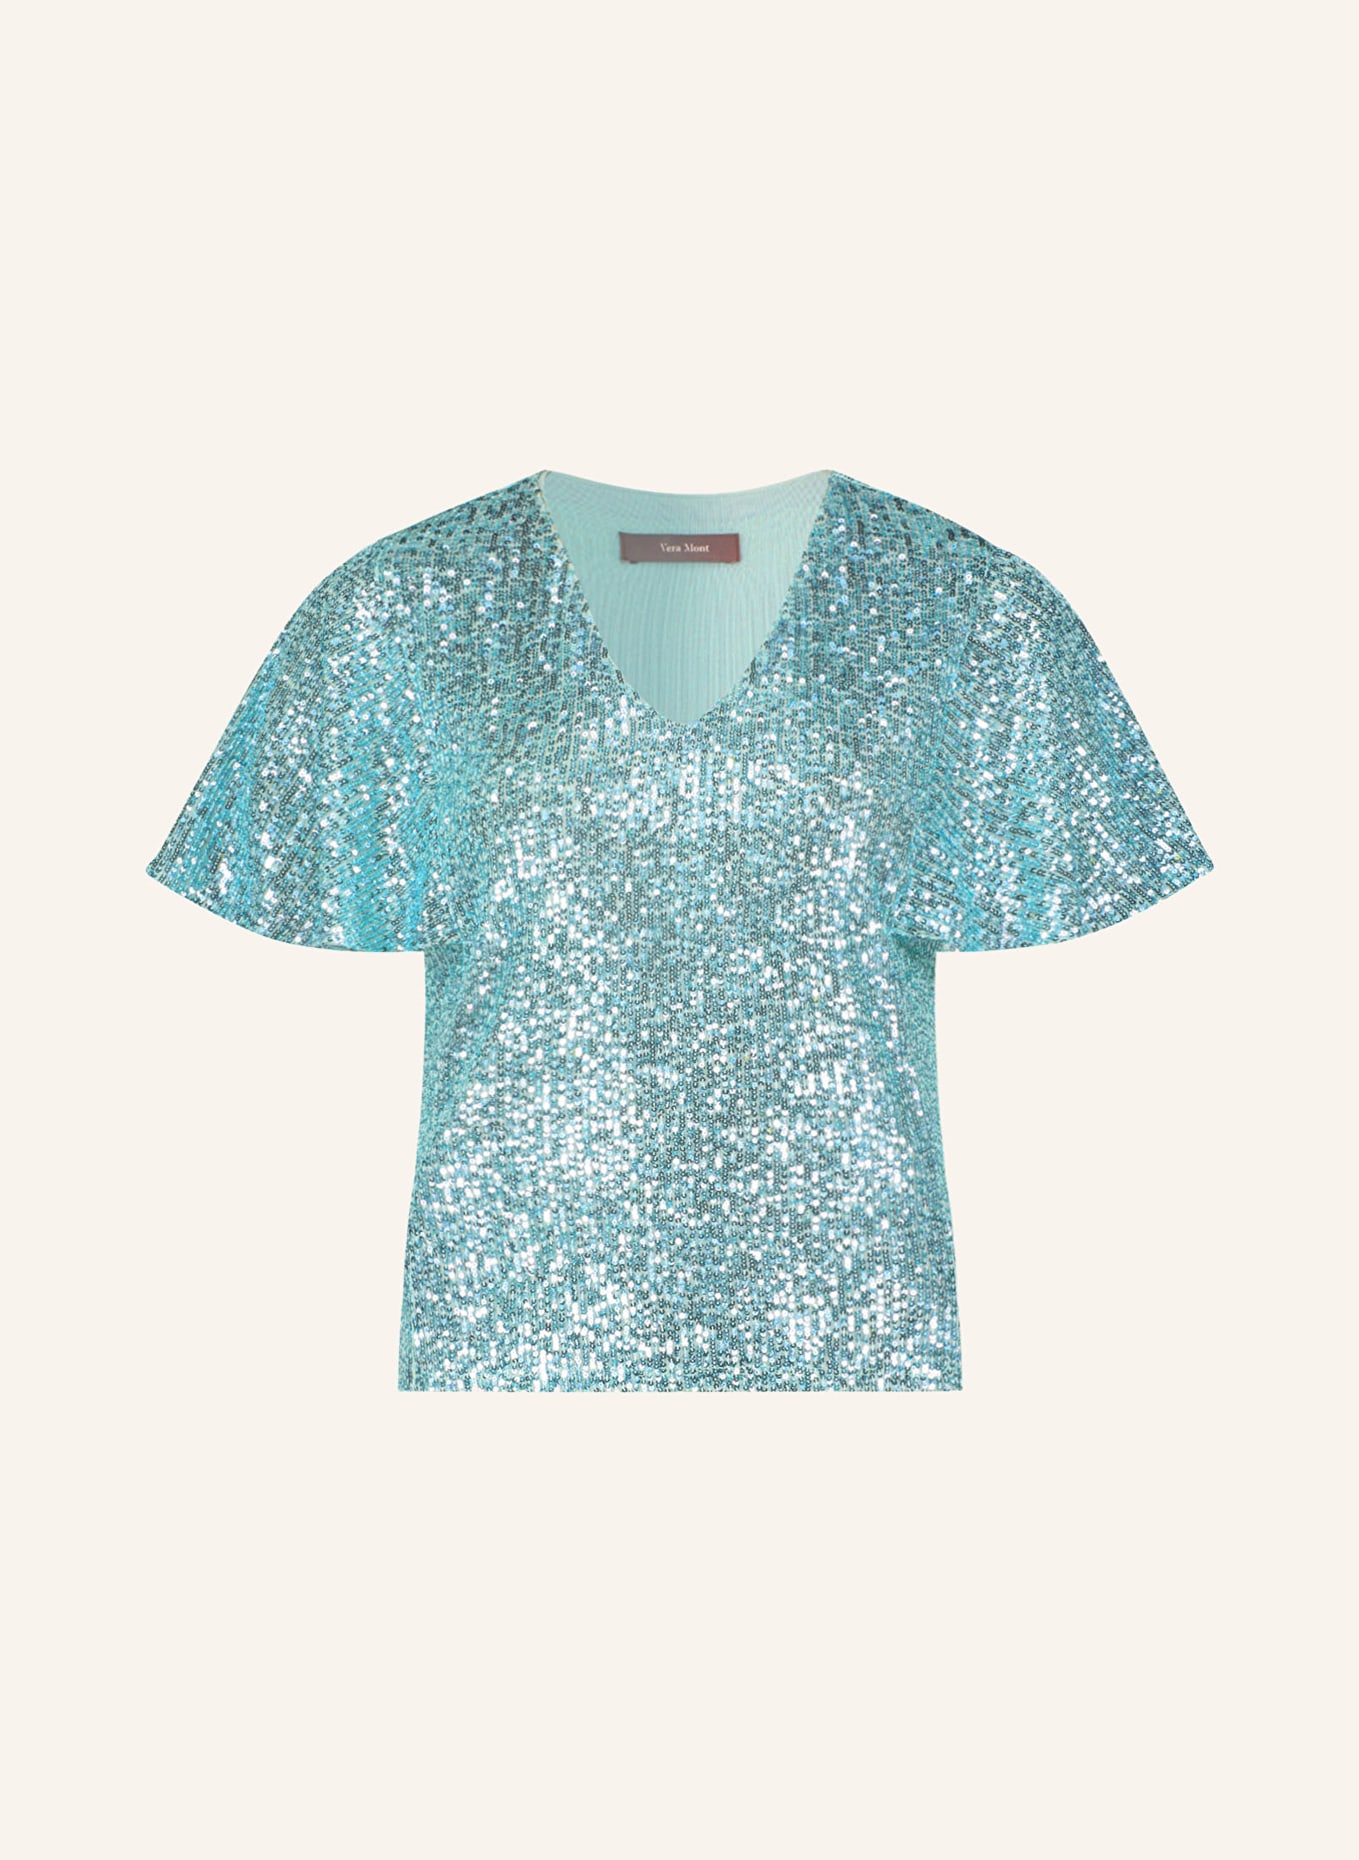 Vera Mont Shirt blouse with sequins, Color: MINT (Image 1)